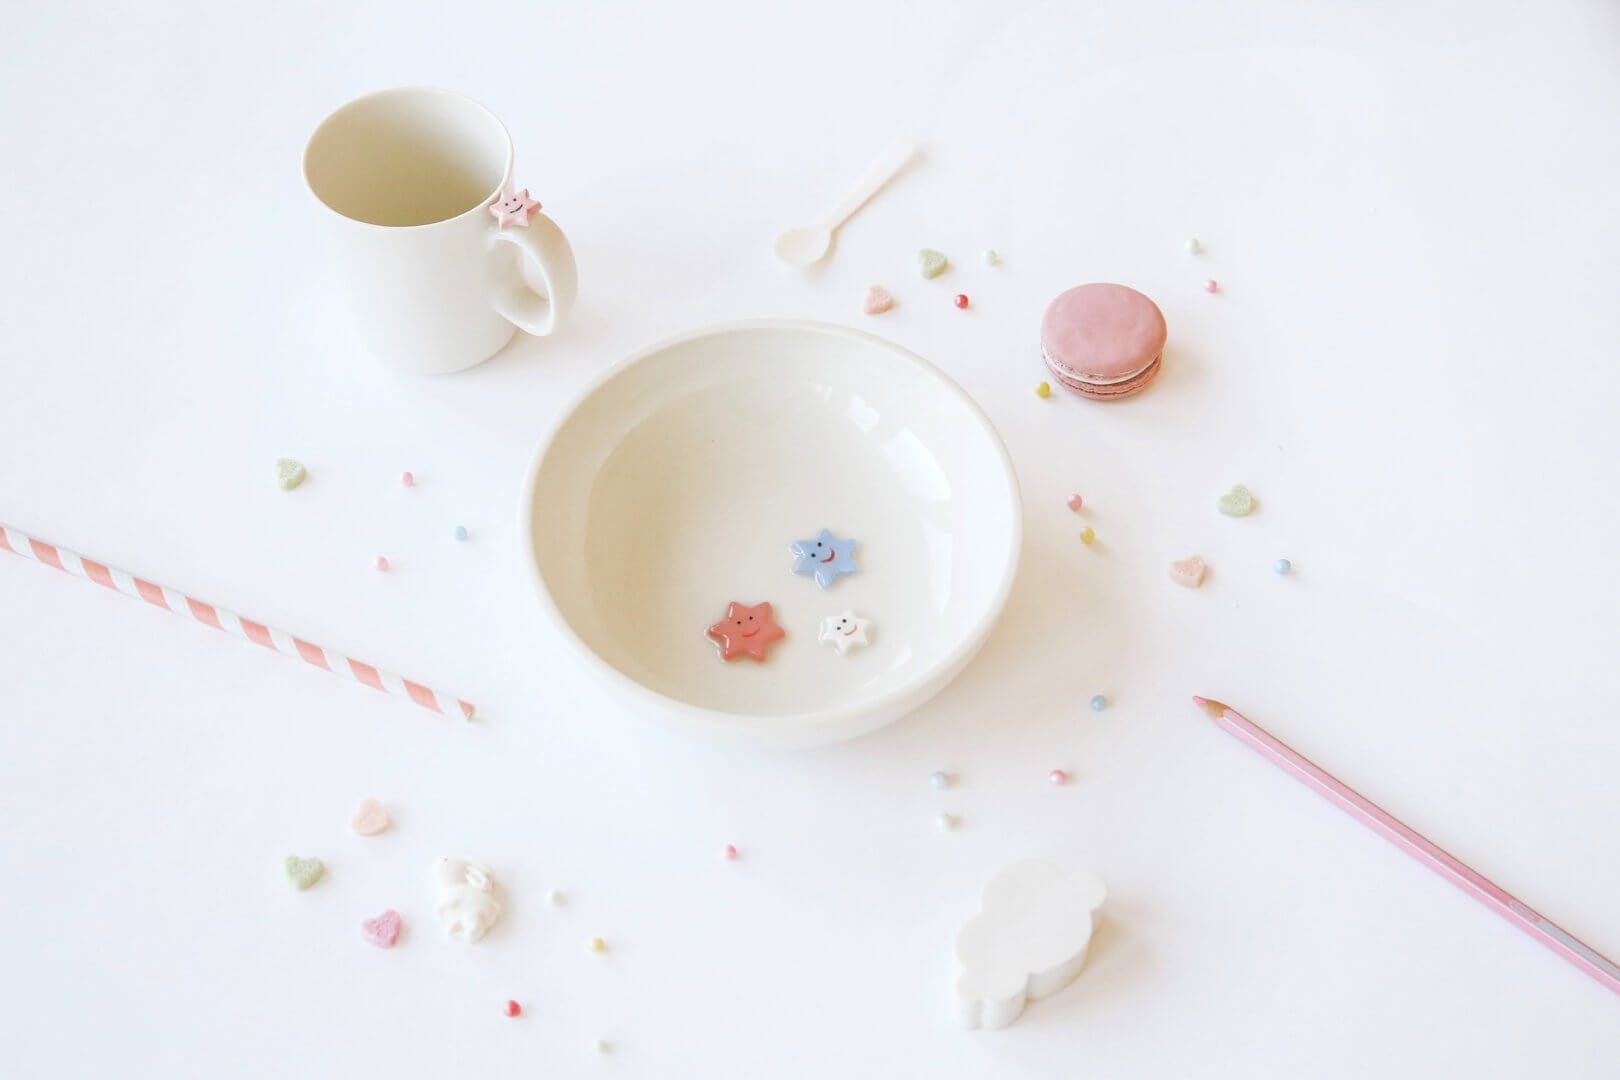 Smiling Table Keramik - eine handgefertigte Schale und ein Becher mit lächelnden Sternen inmitten hübscher pastellfarbener Accessoires auf einem sauberen weißen Hintergrund.